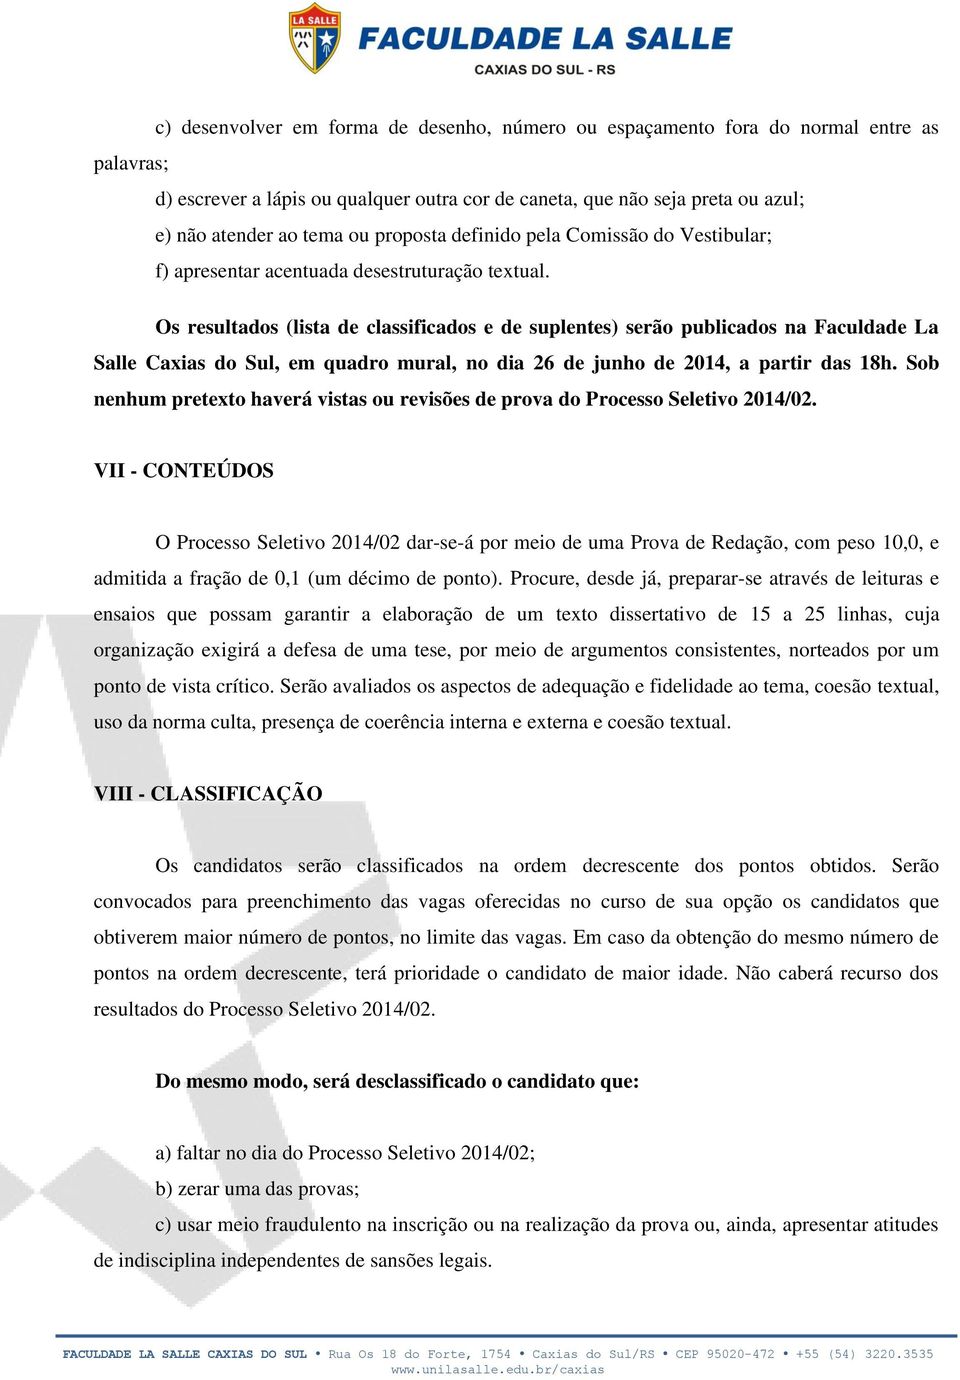 Os resultados (lista de classificados e de suplentes) serão publicados na Faculdade La Salle Caxias do Sul, em quadro mural, no dia 26 de junho de 2014, a partir das 18h.